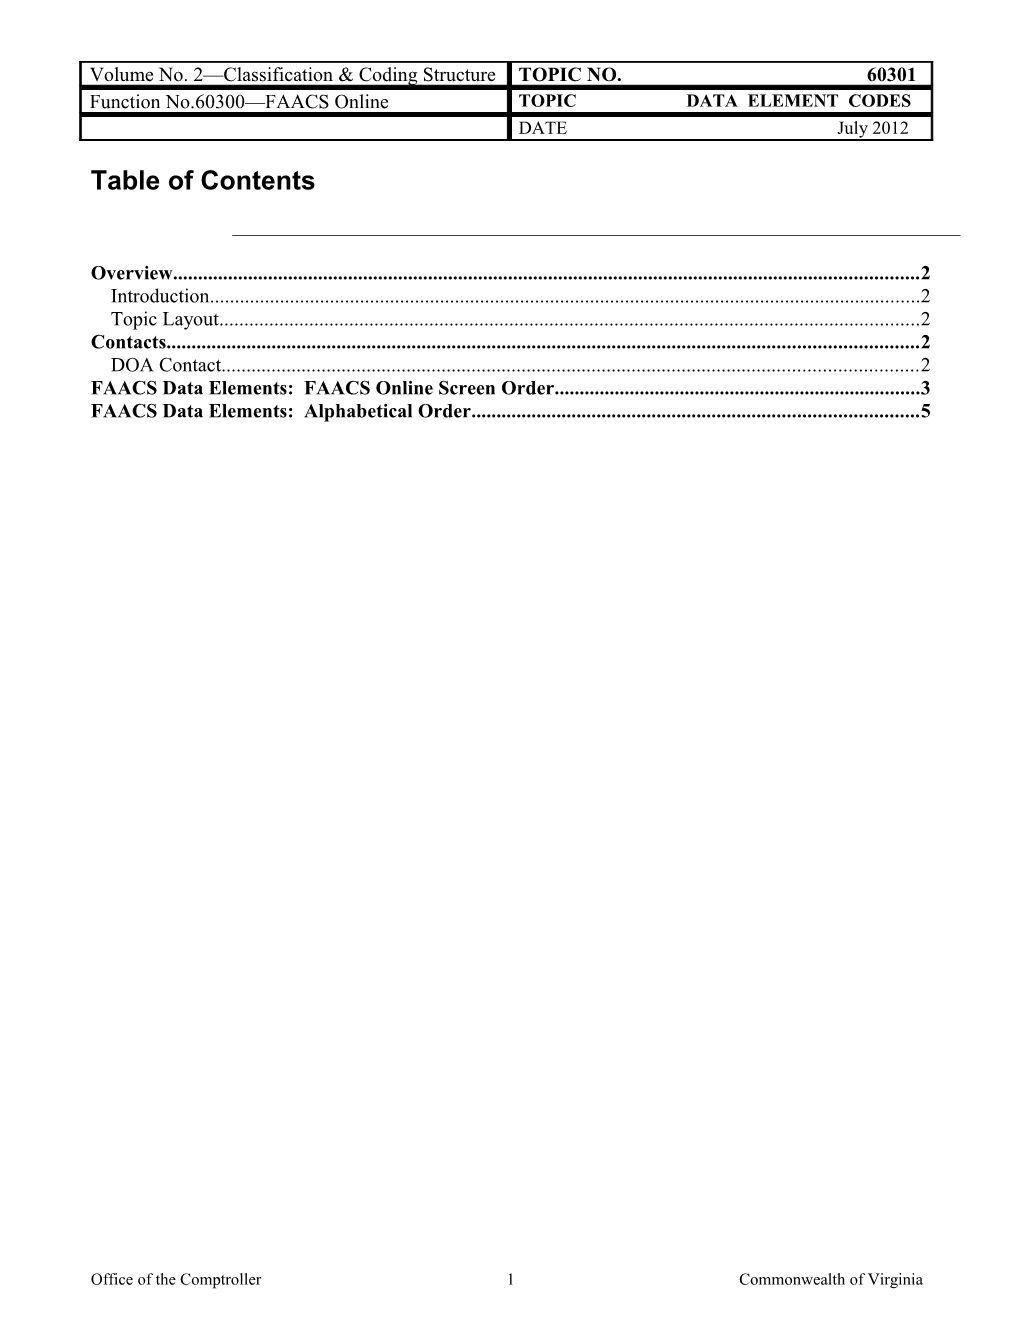 CAPP Manual - 60301 - FAACS Online, Data Element Codes